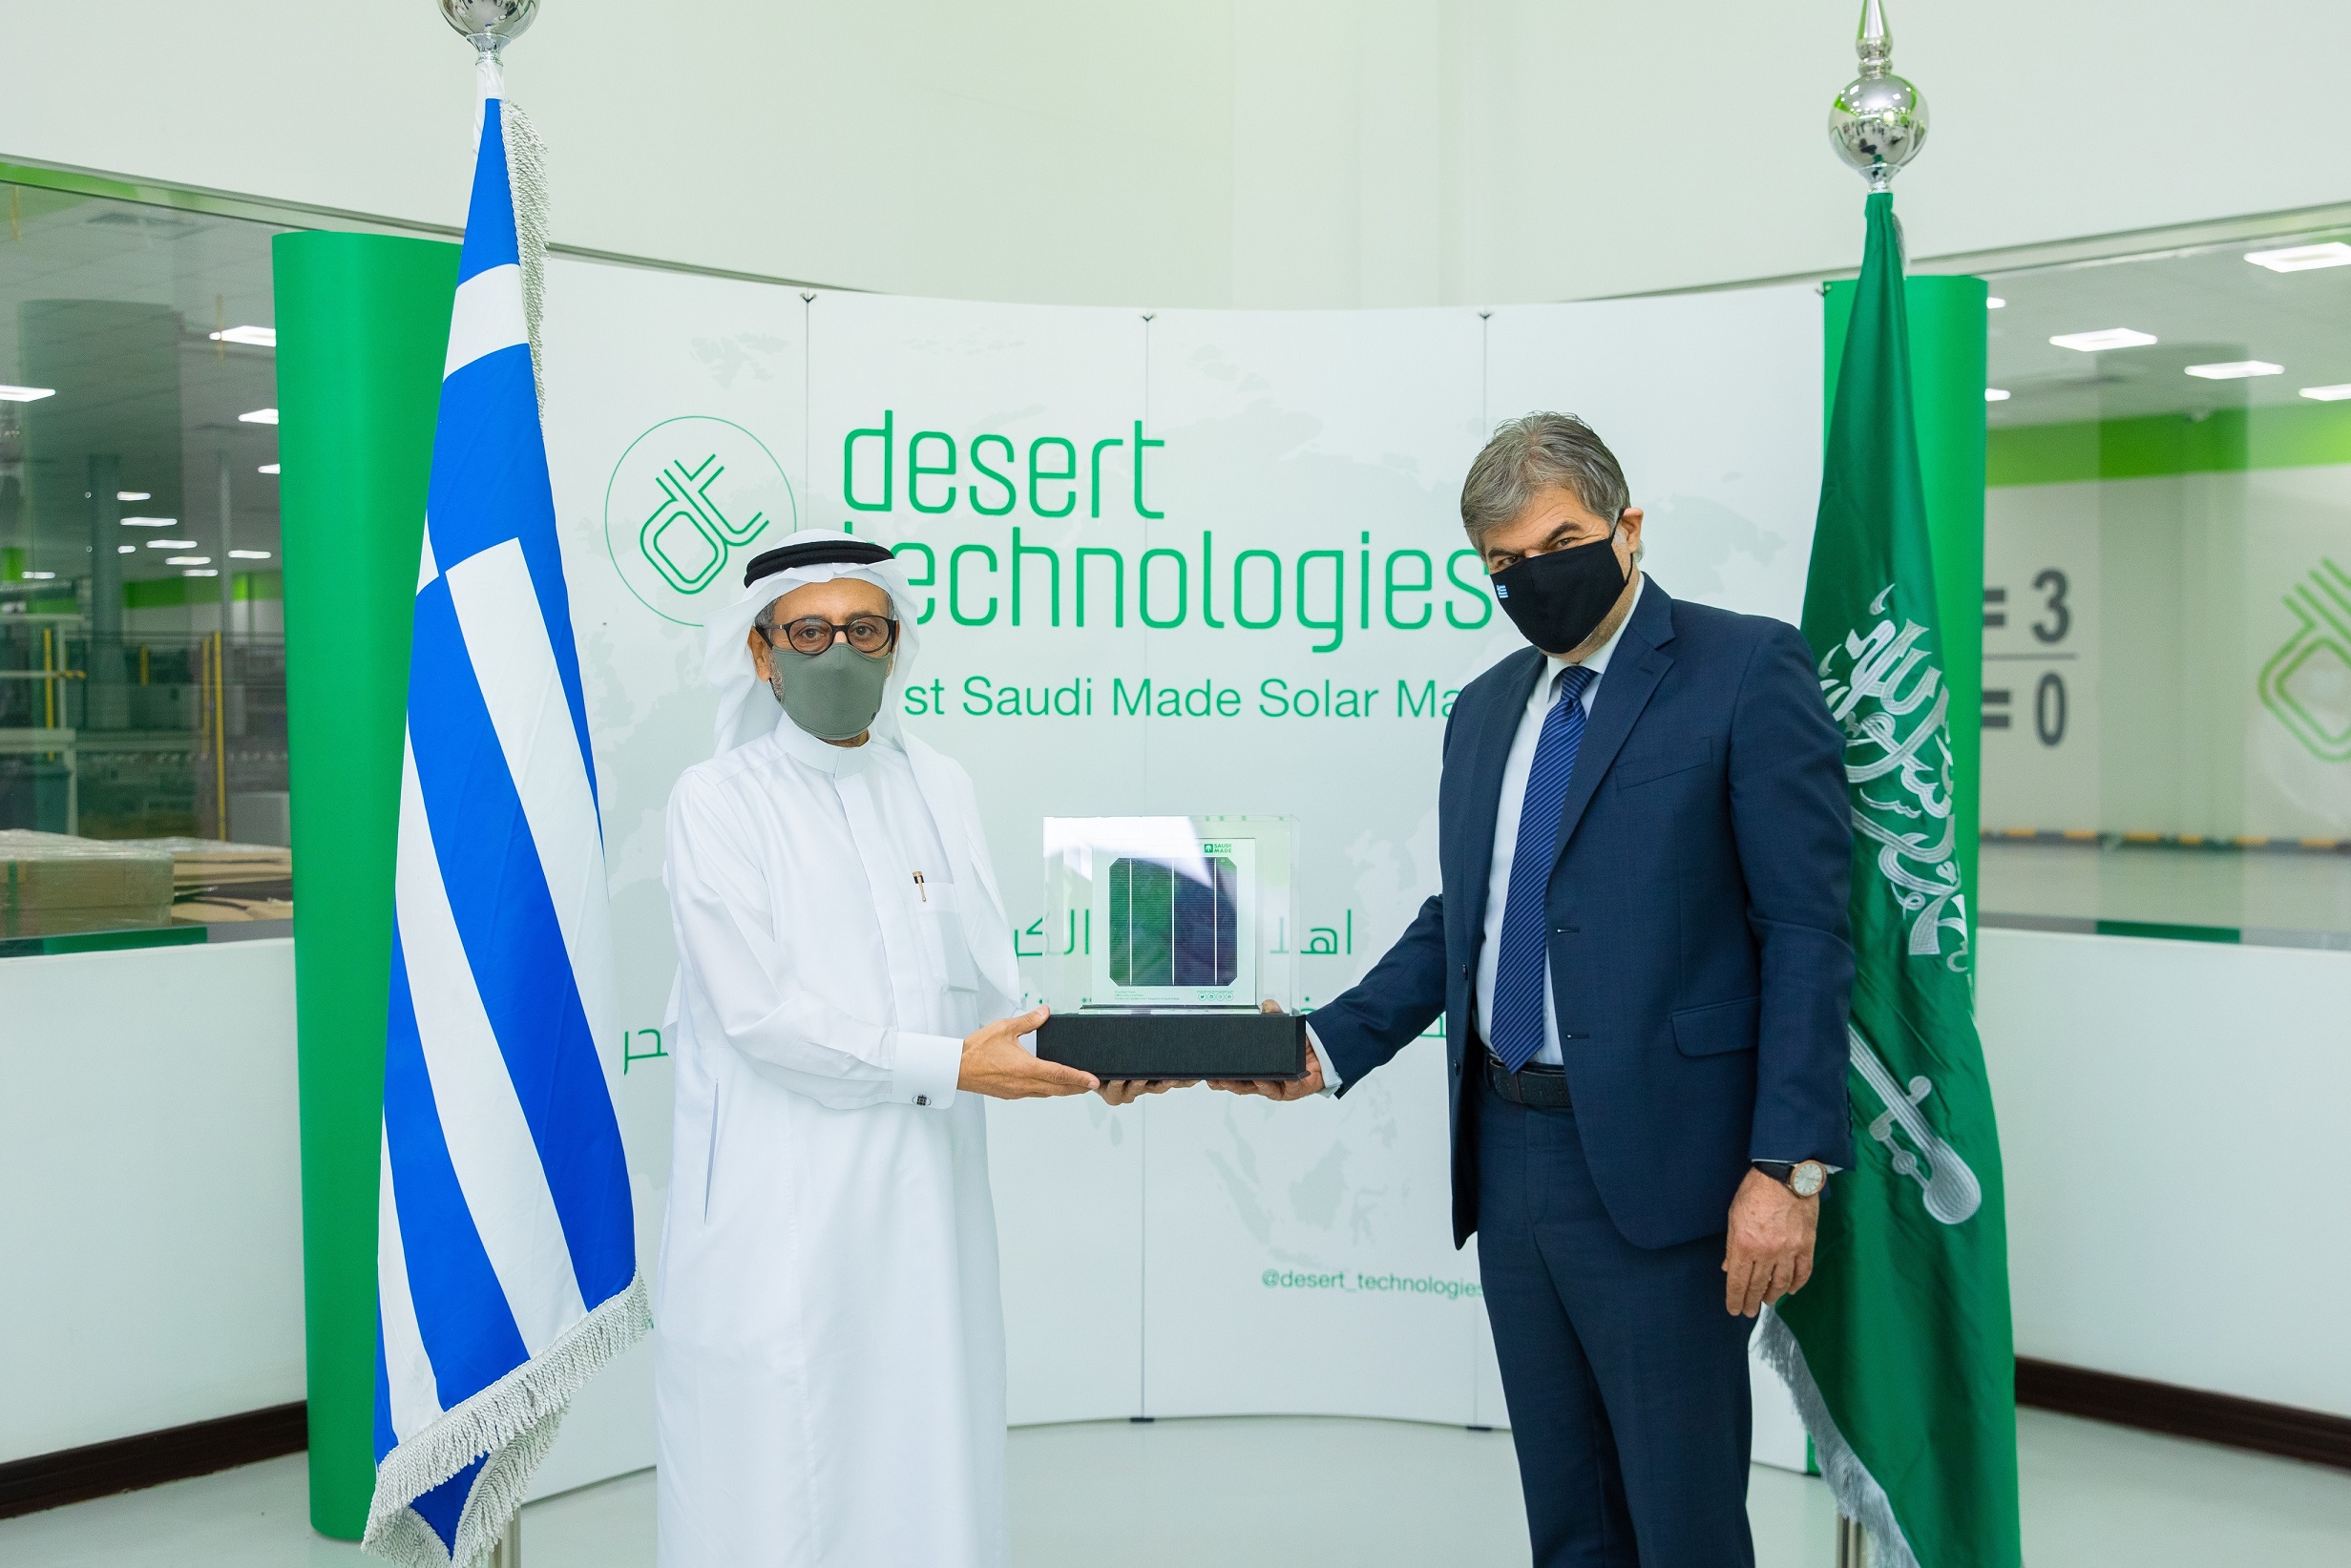 تكنولوجيات الصحراء تُصِّدر الألواح الشمسية السعودية إلى اليونان لتنفيذ عدد من المشاريع في جزيرة تريفيلا